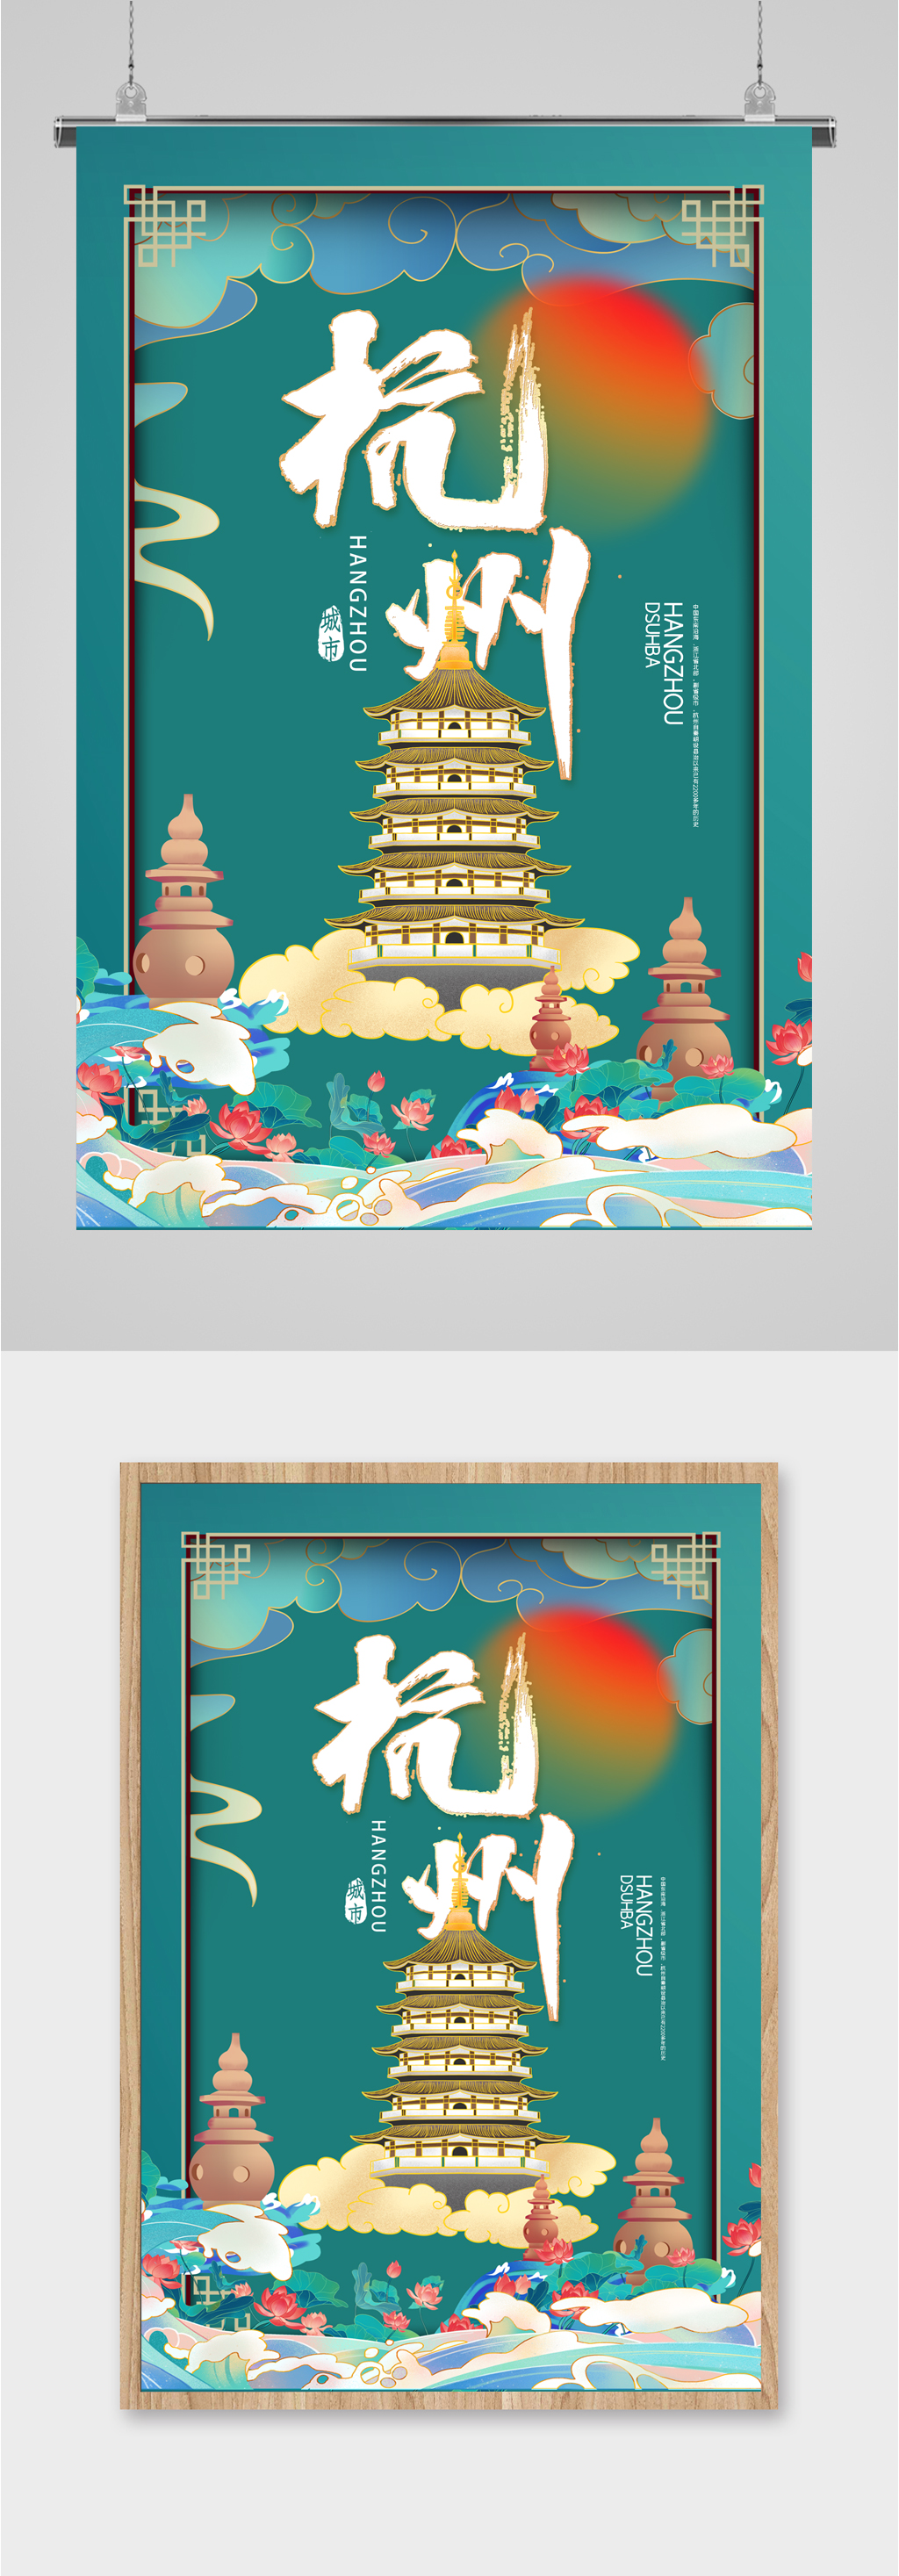 杭州旅游banner图片